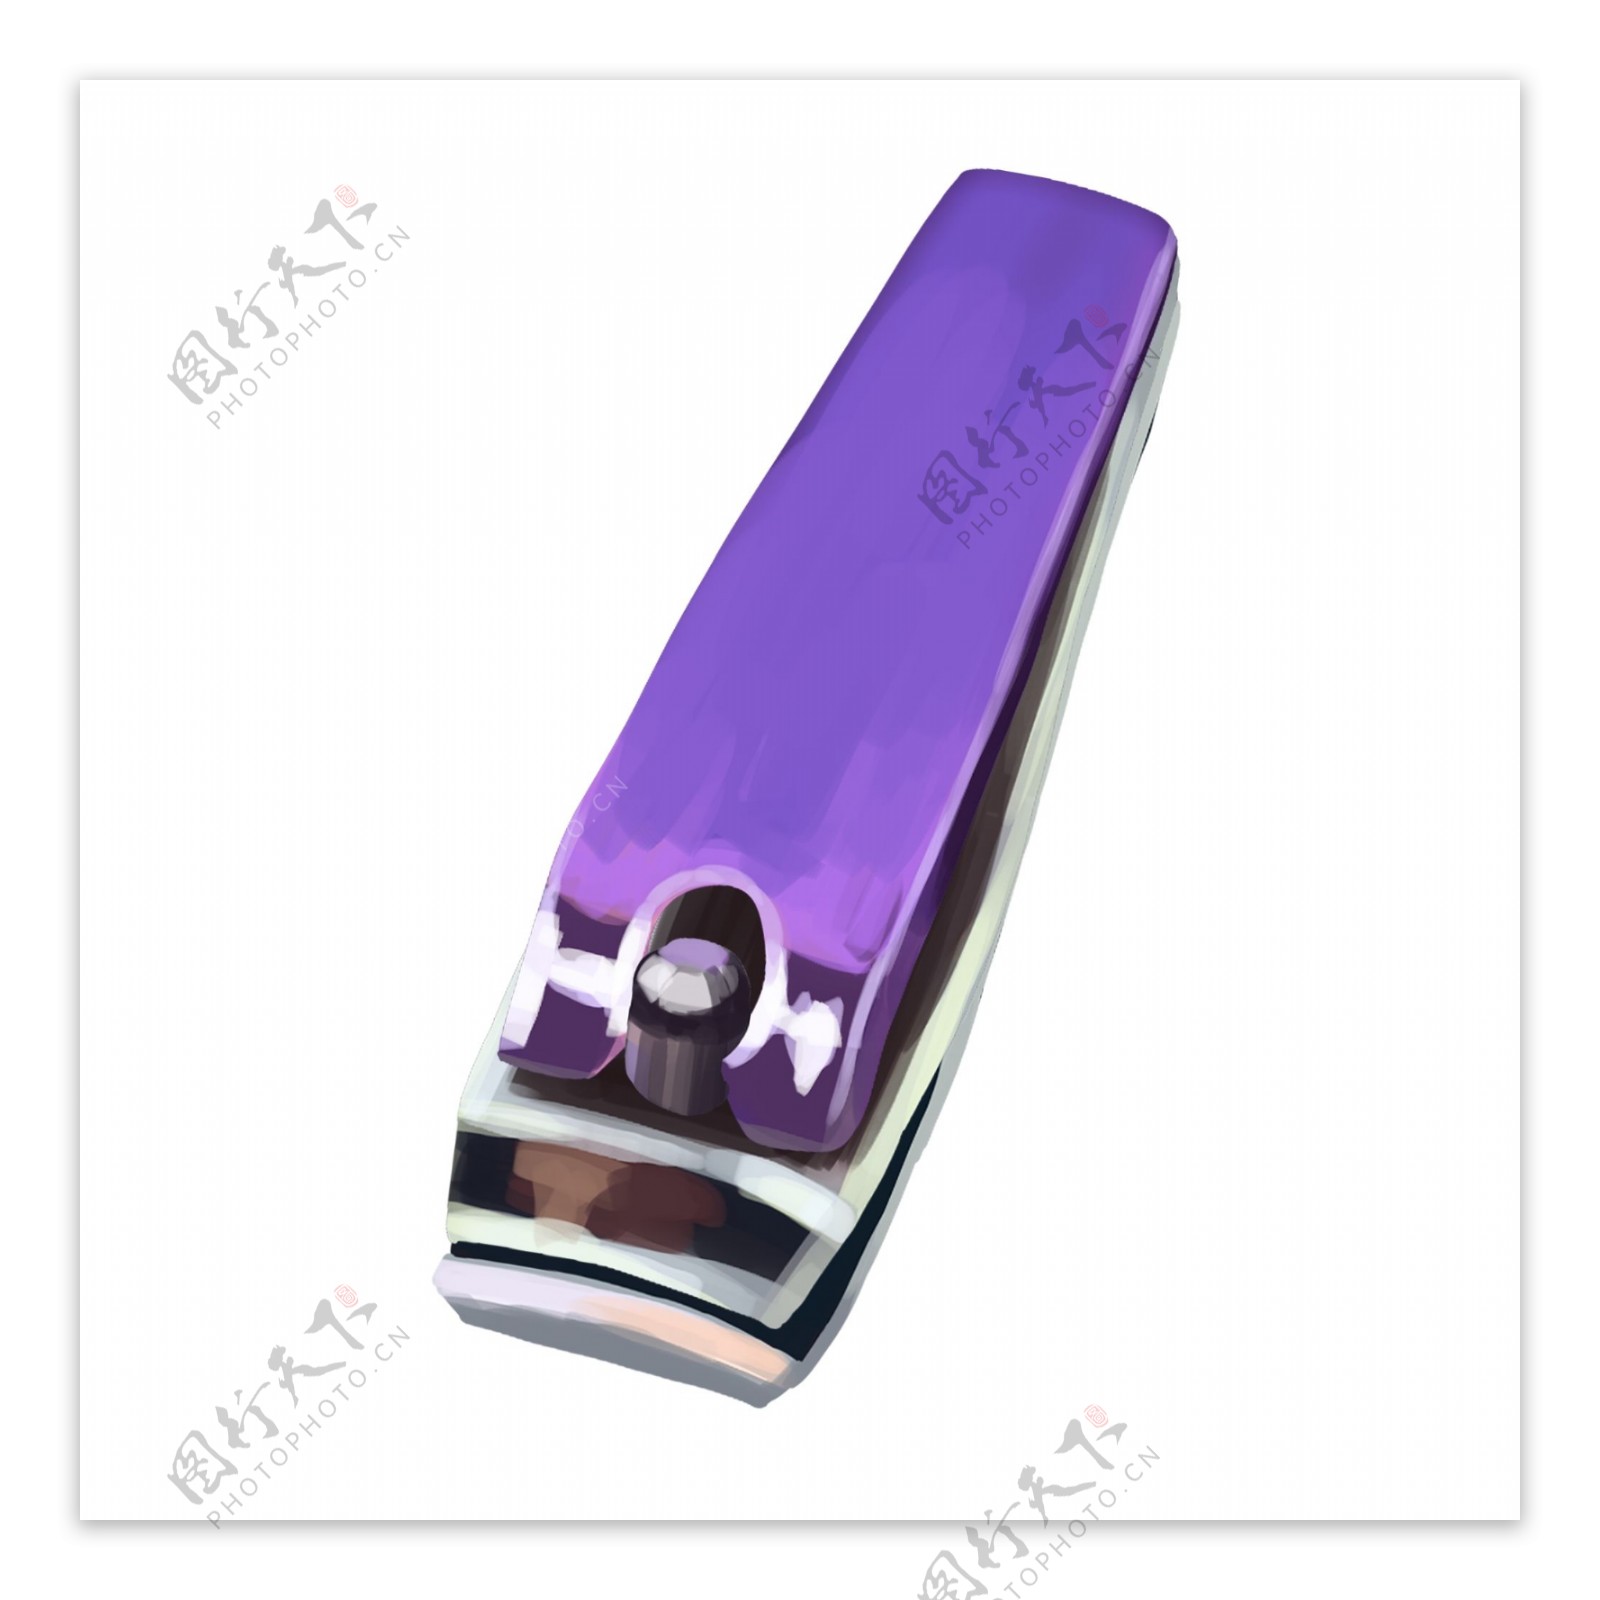 紫色修剪指甲刀